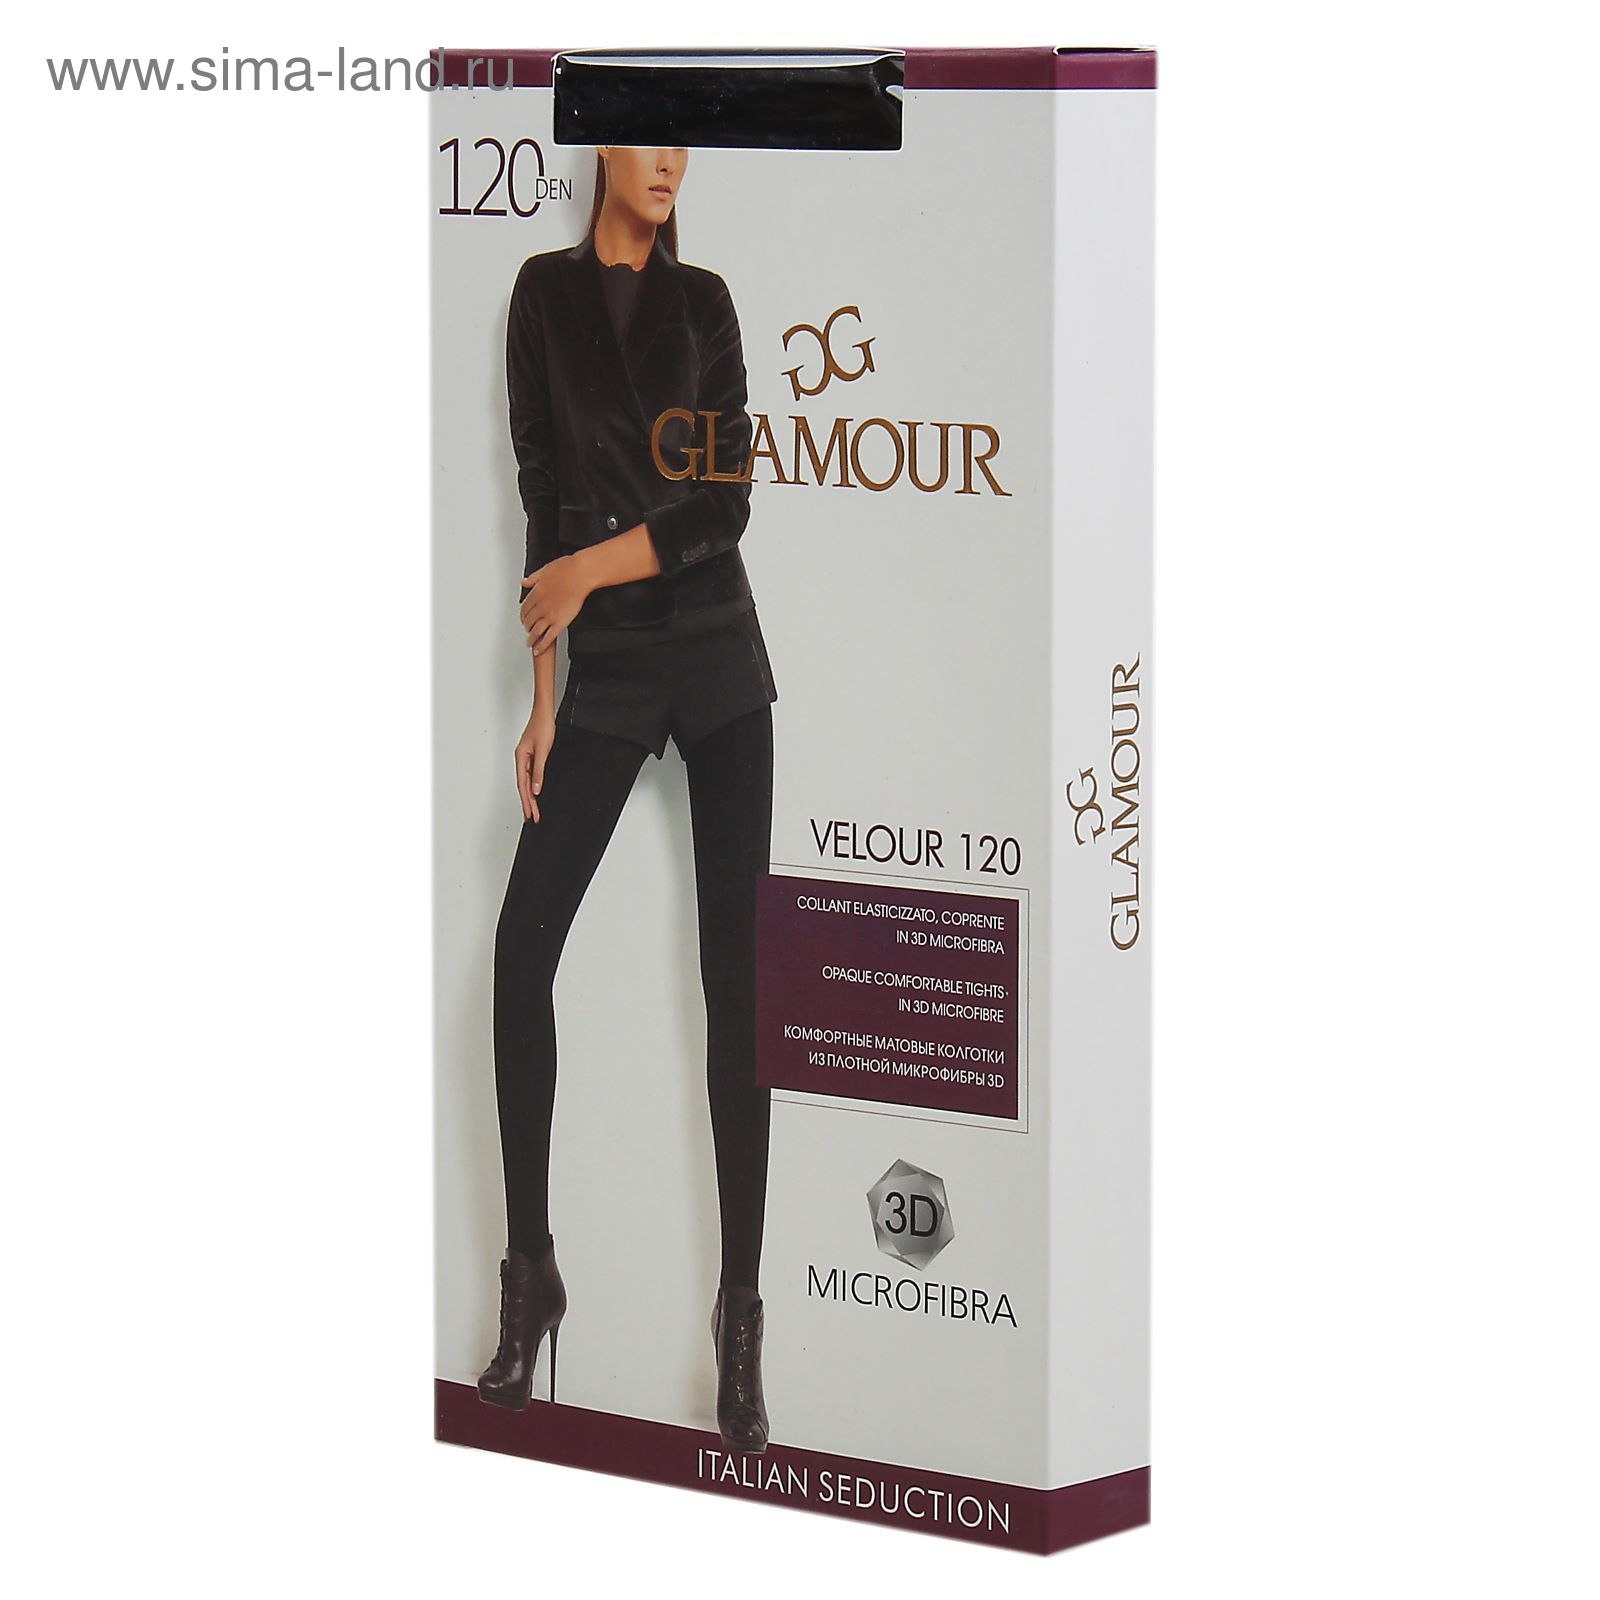 Колготки женские GLAMOUR Velour 120 цвет чёрный (nero), р-р 4 (1018158) -  Купить по цене от 122.00 руб. | Интернет магазин SIMA-LAND.RU